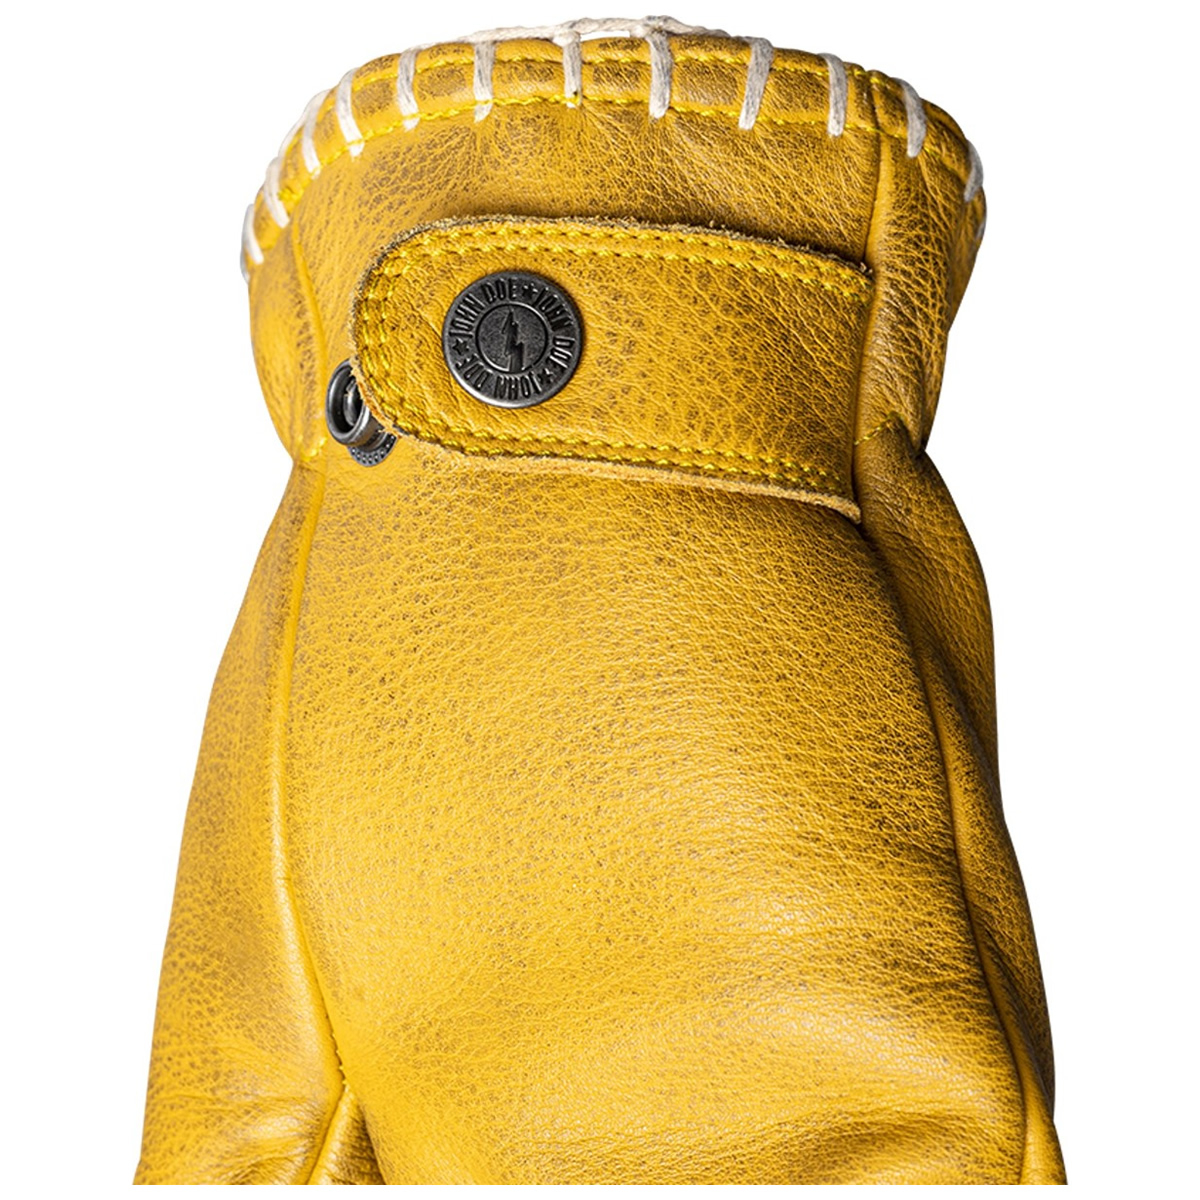 John Doe Coyote Handschuhe, gelb geprägt